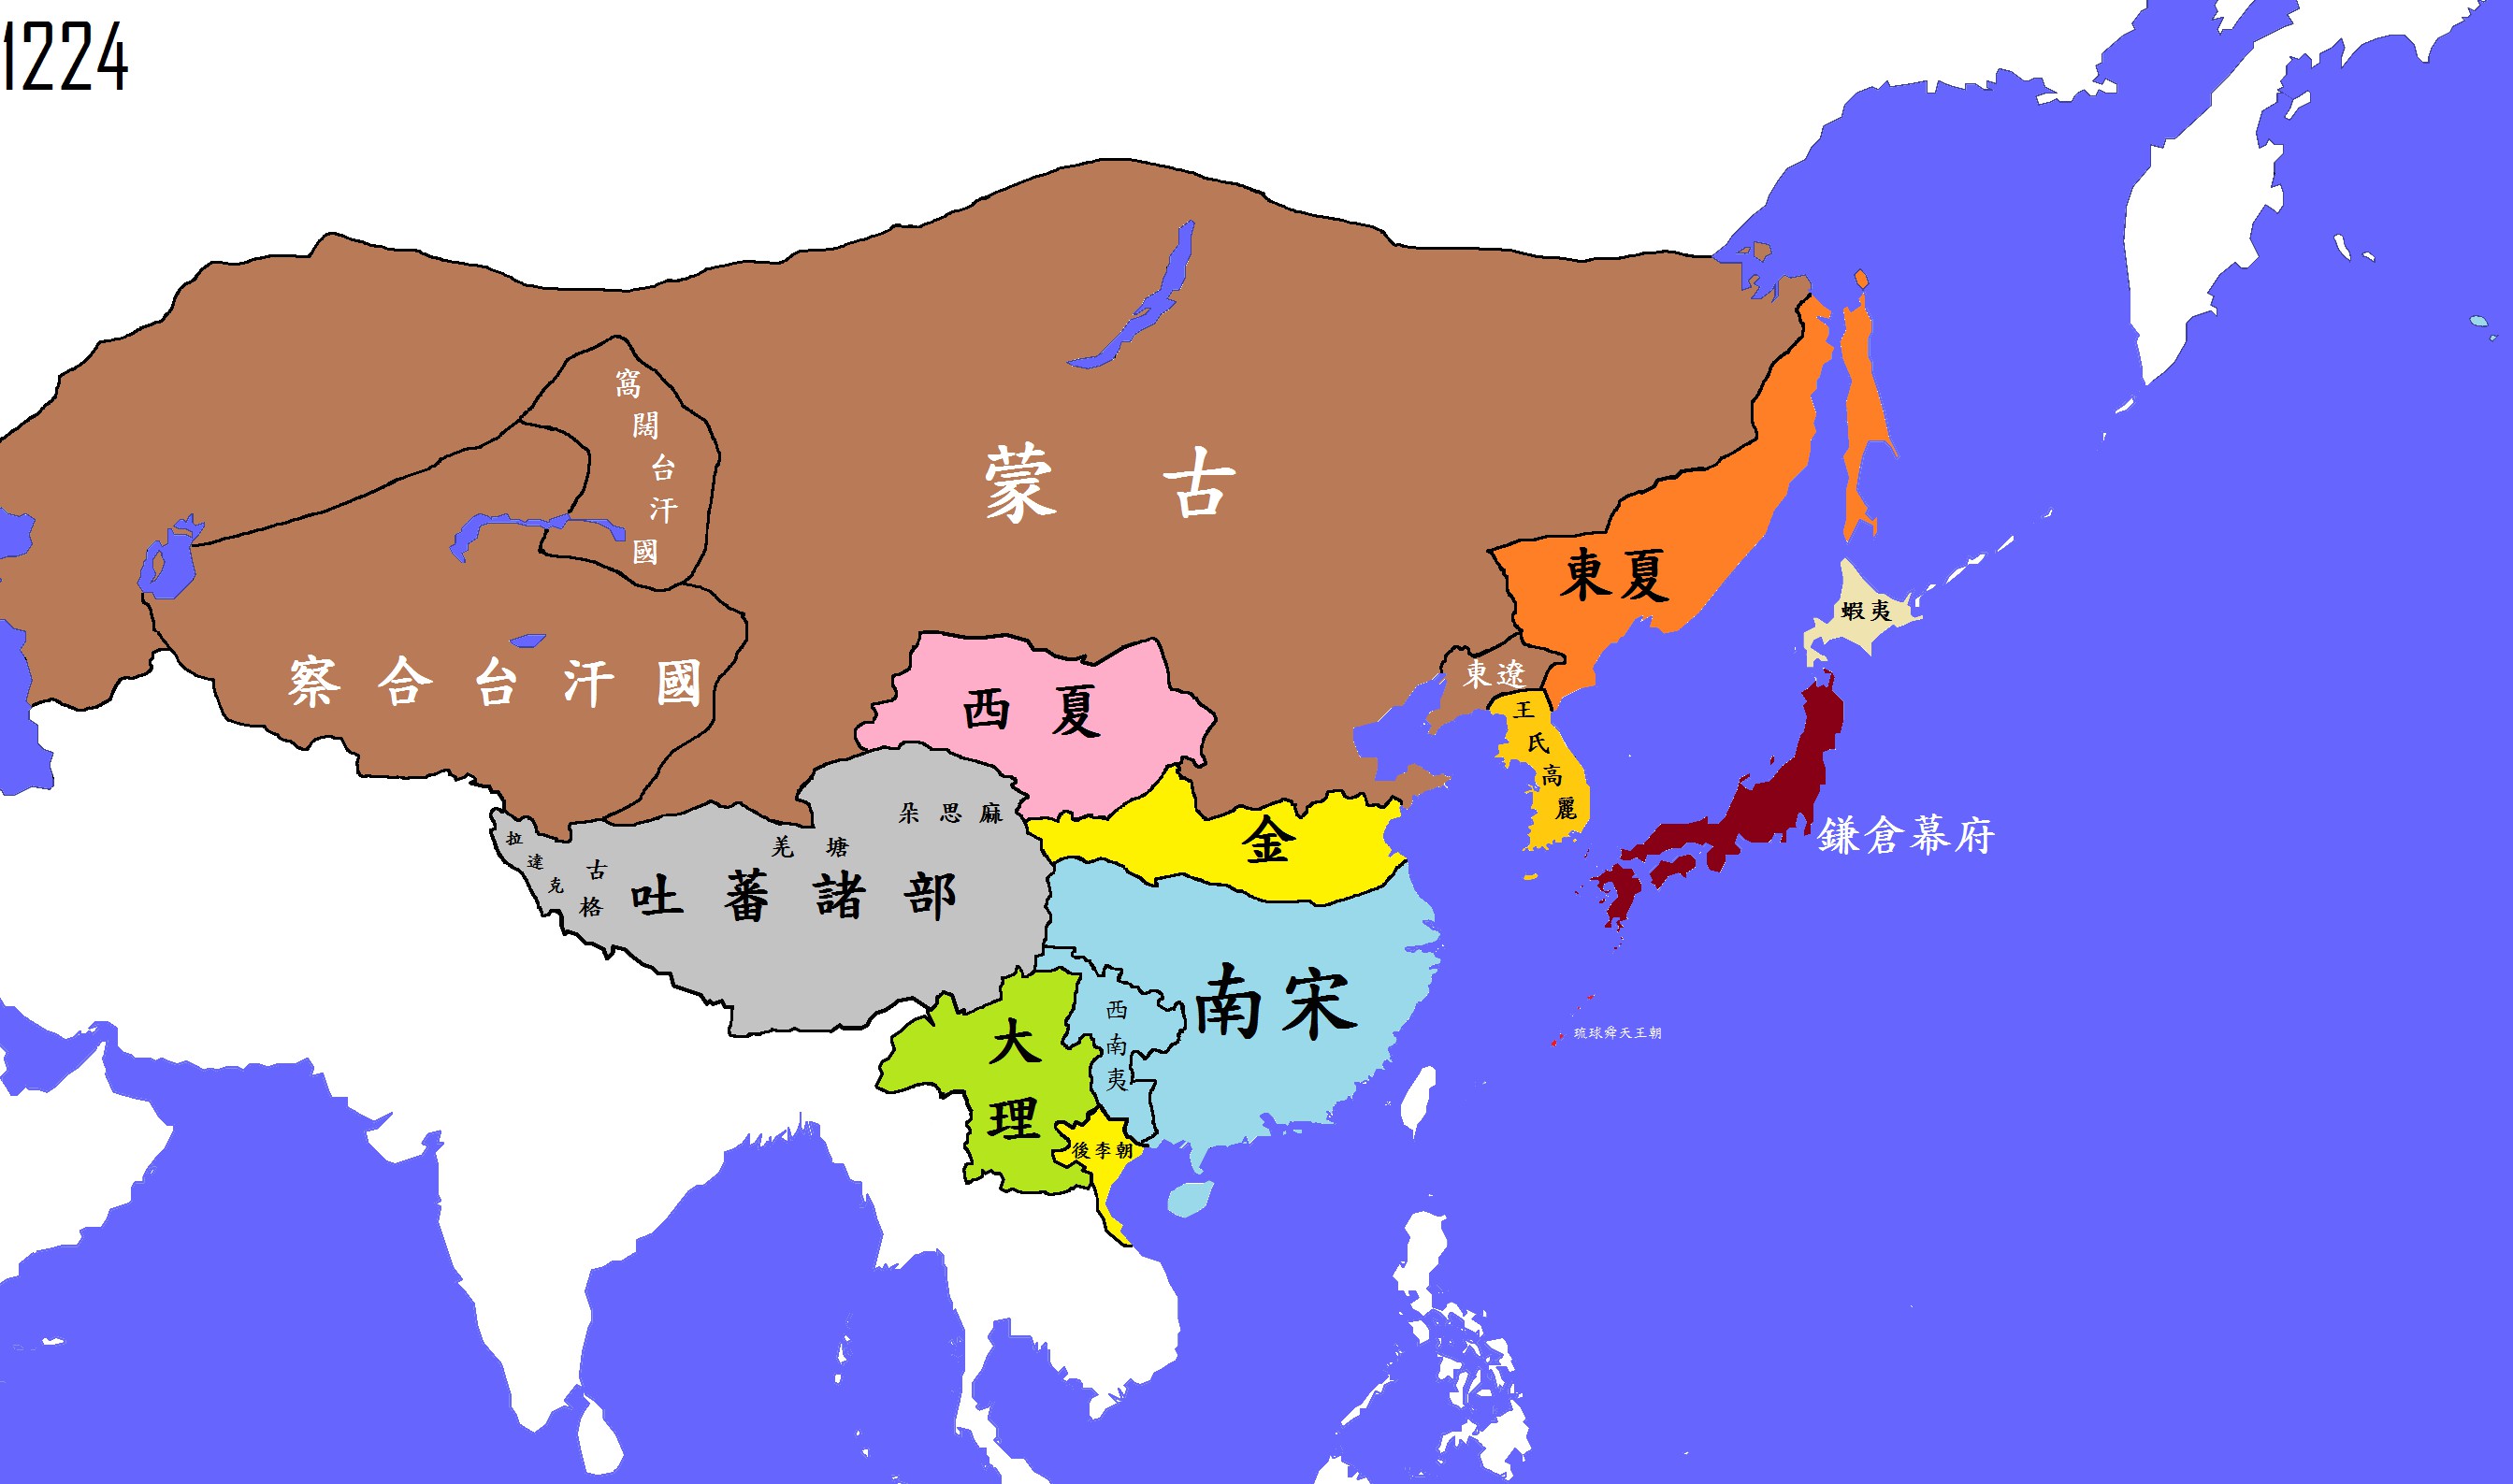 公元1224年(宋,西夏,金)_中国疆域地图查询